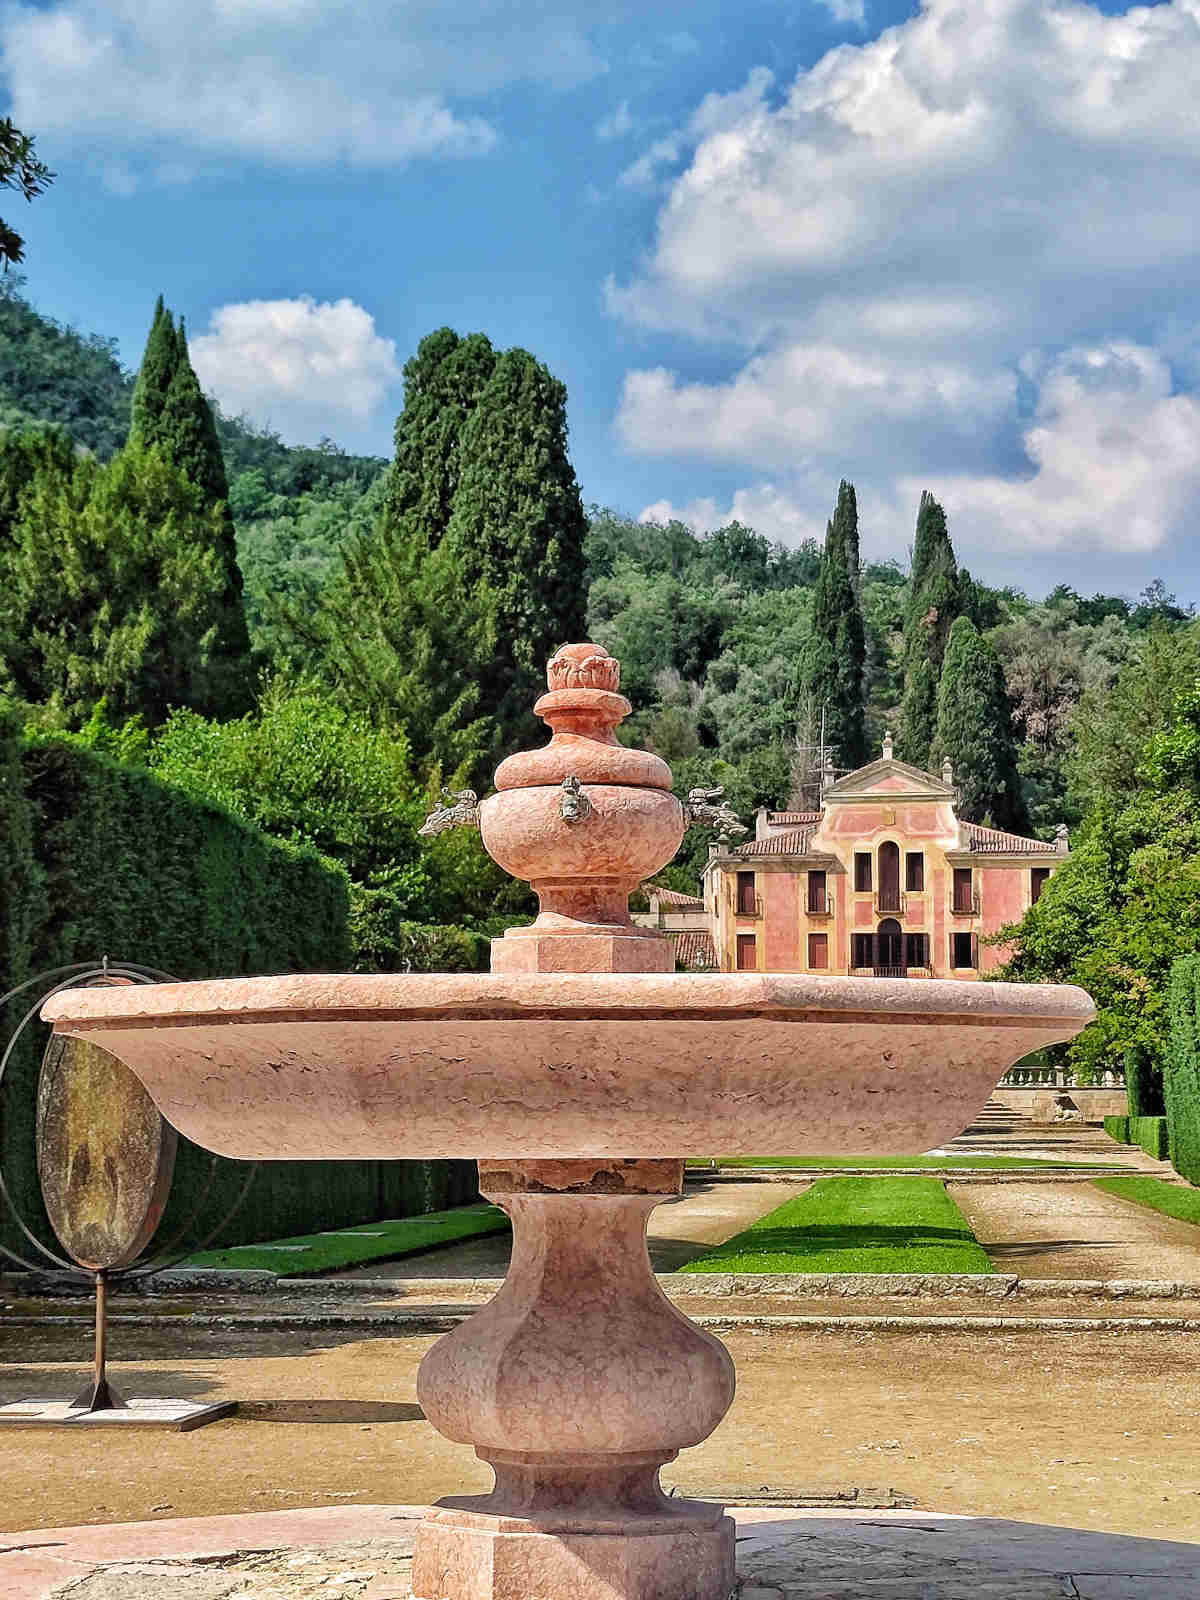 La fontana della Pila, detta anche della Conca nei Giardini di Villa Barbarigo a Valsanzibio